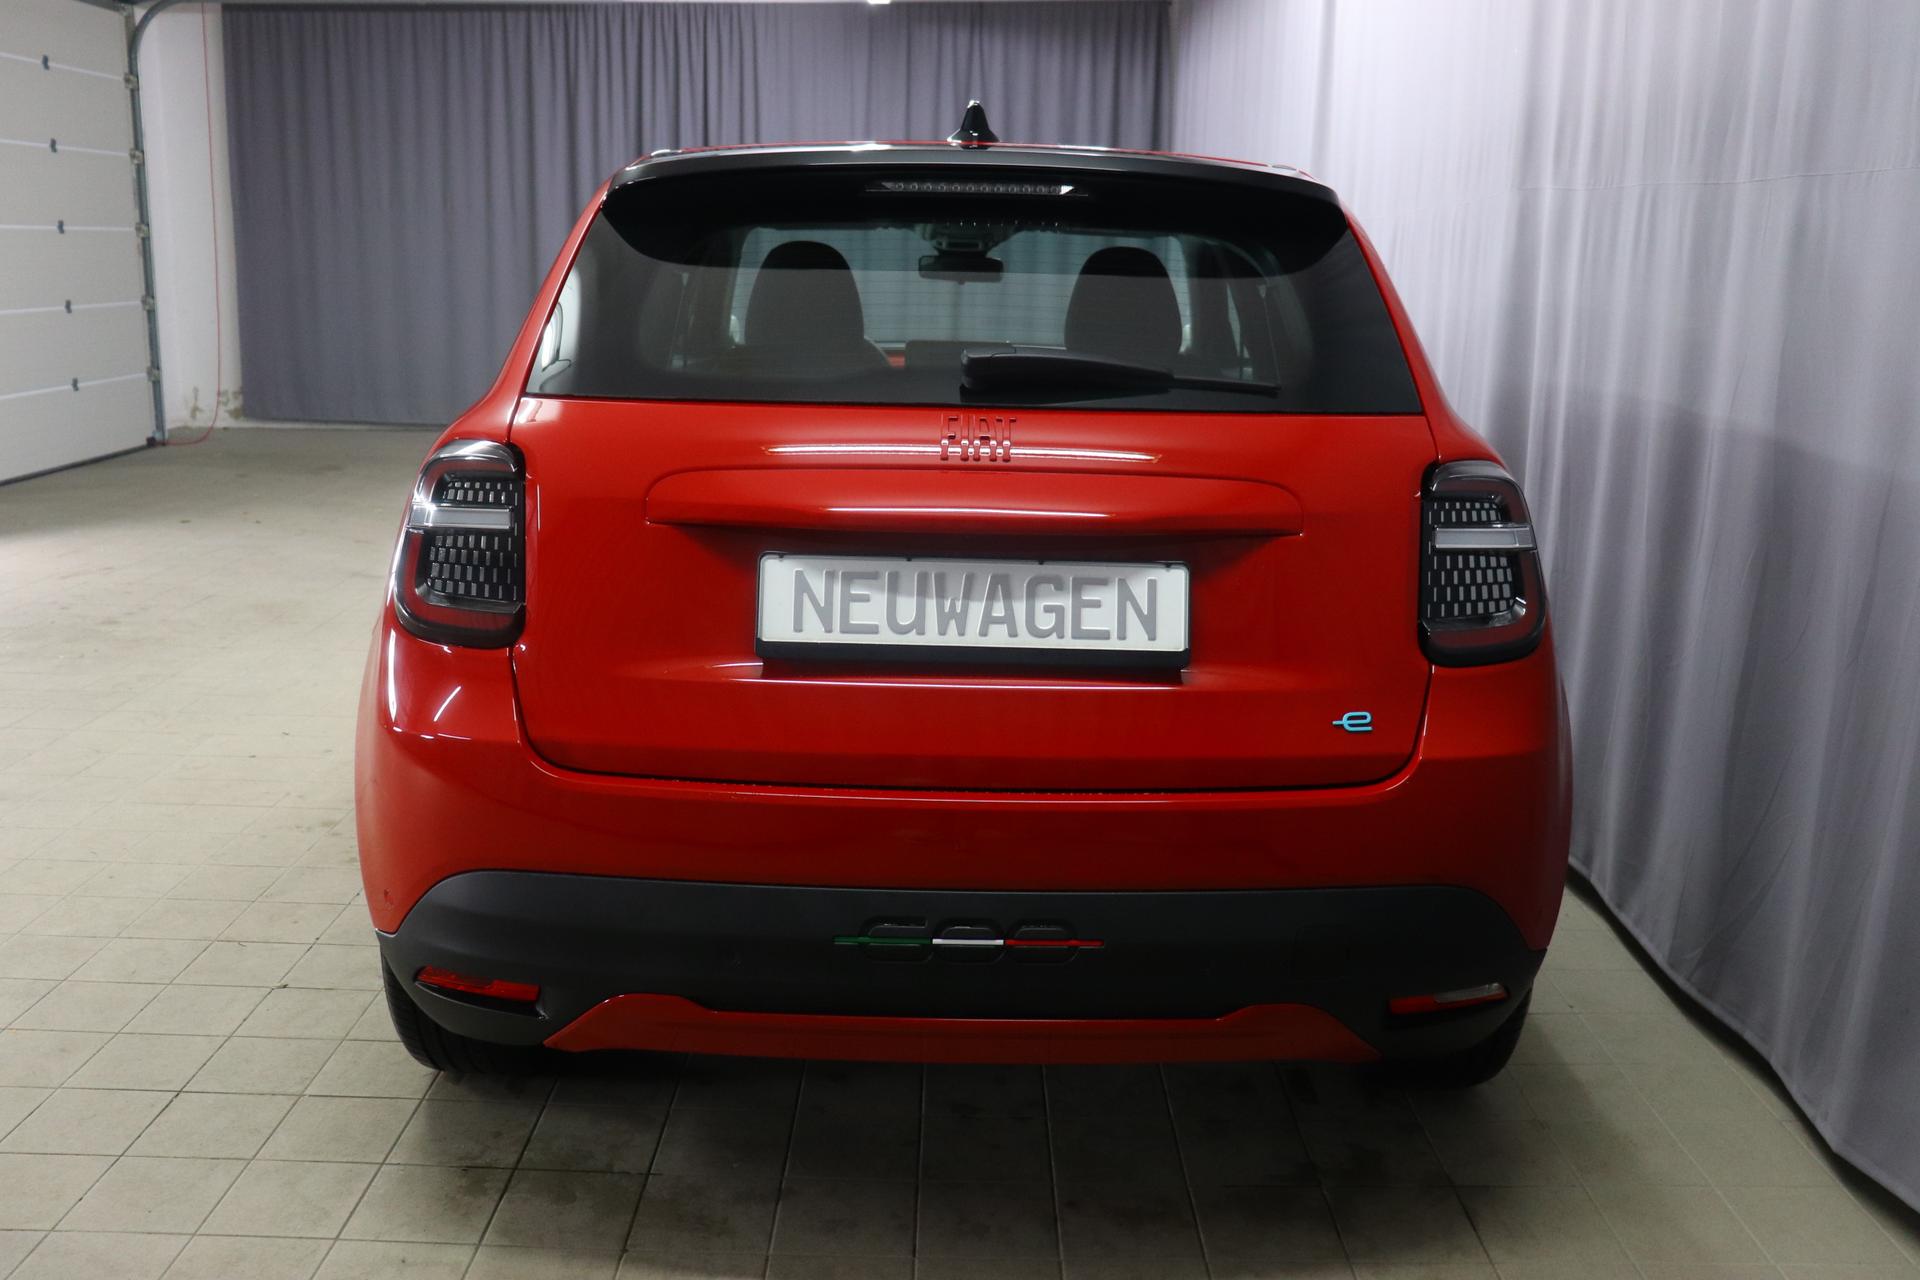 Fiat 600e RED 54kWh 115kW, Klimaautomatik, Ambiente Licht inkl. Color  Therapy, 10,25 Infotainment, AppleCarPlay&Android Auto, Parksensoren  hinten, Spurhalteassistent, LED Scheinwerfer, Nebelscheinwerfer, 16  Stahlfelgen, uvm. Neuwagen mit Rabatt